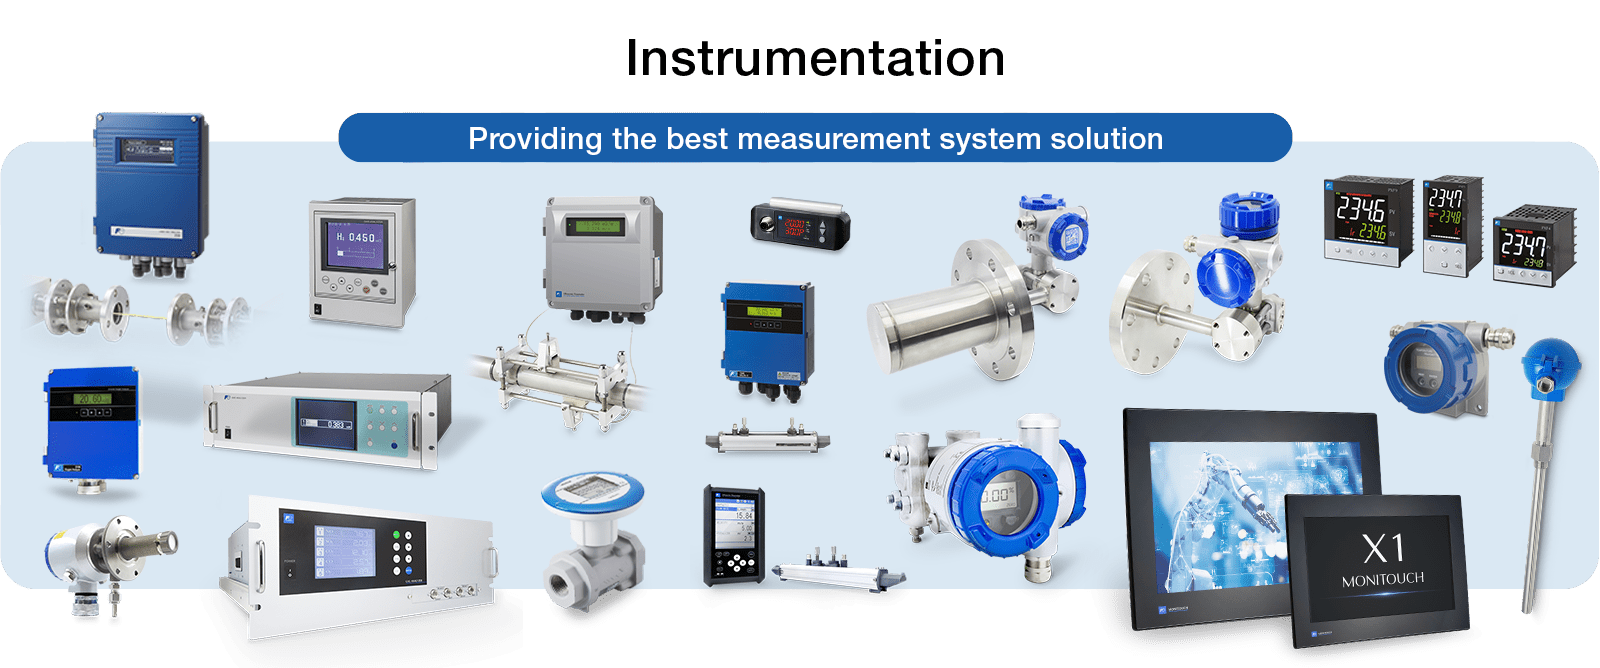 instrumentos e equipamentos de medição